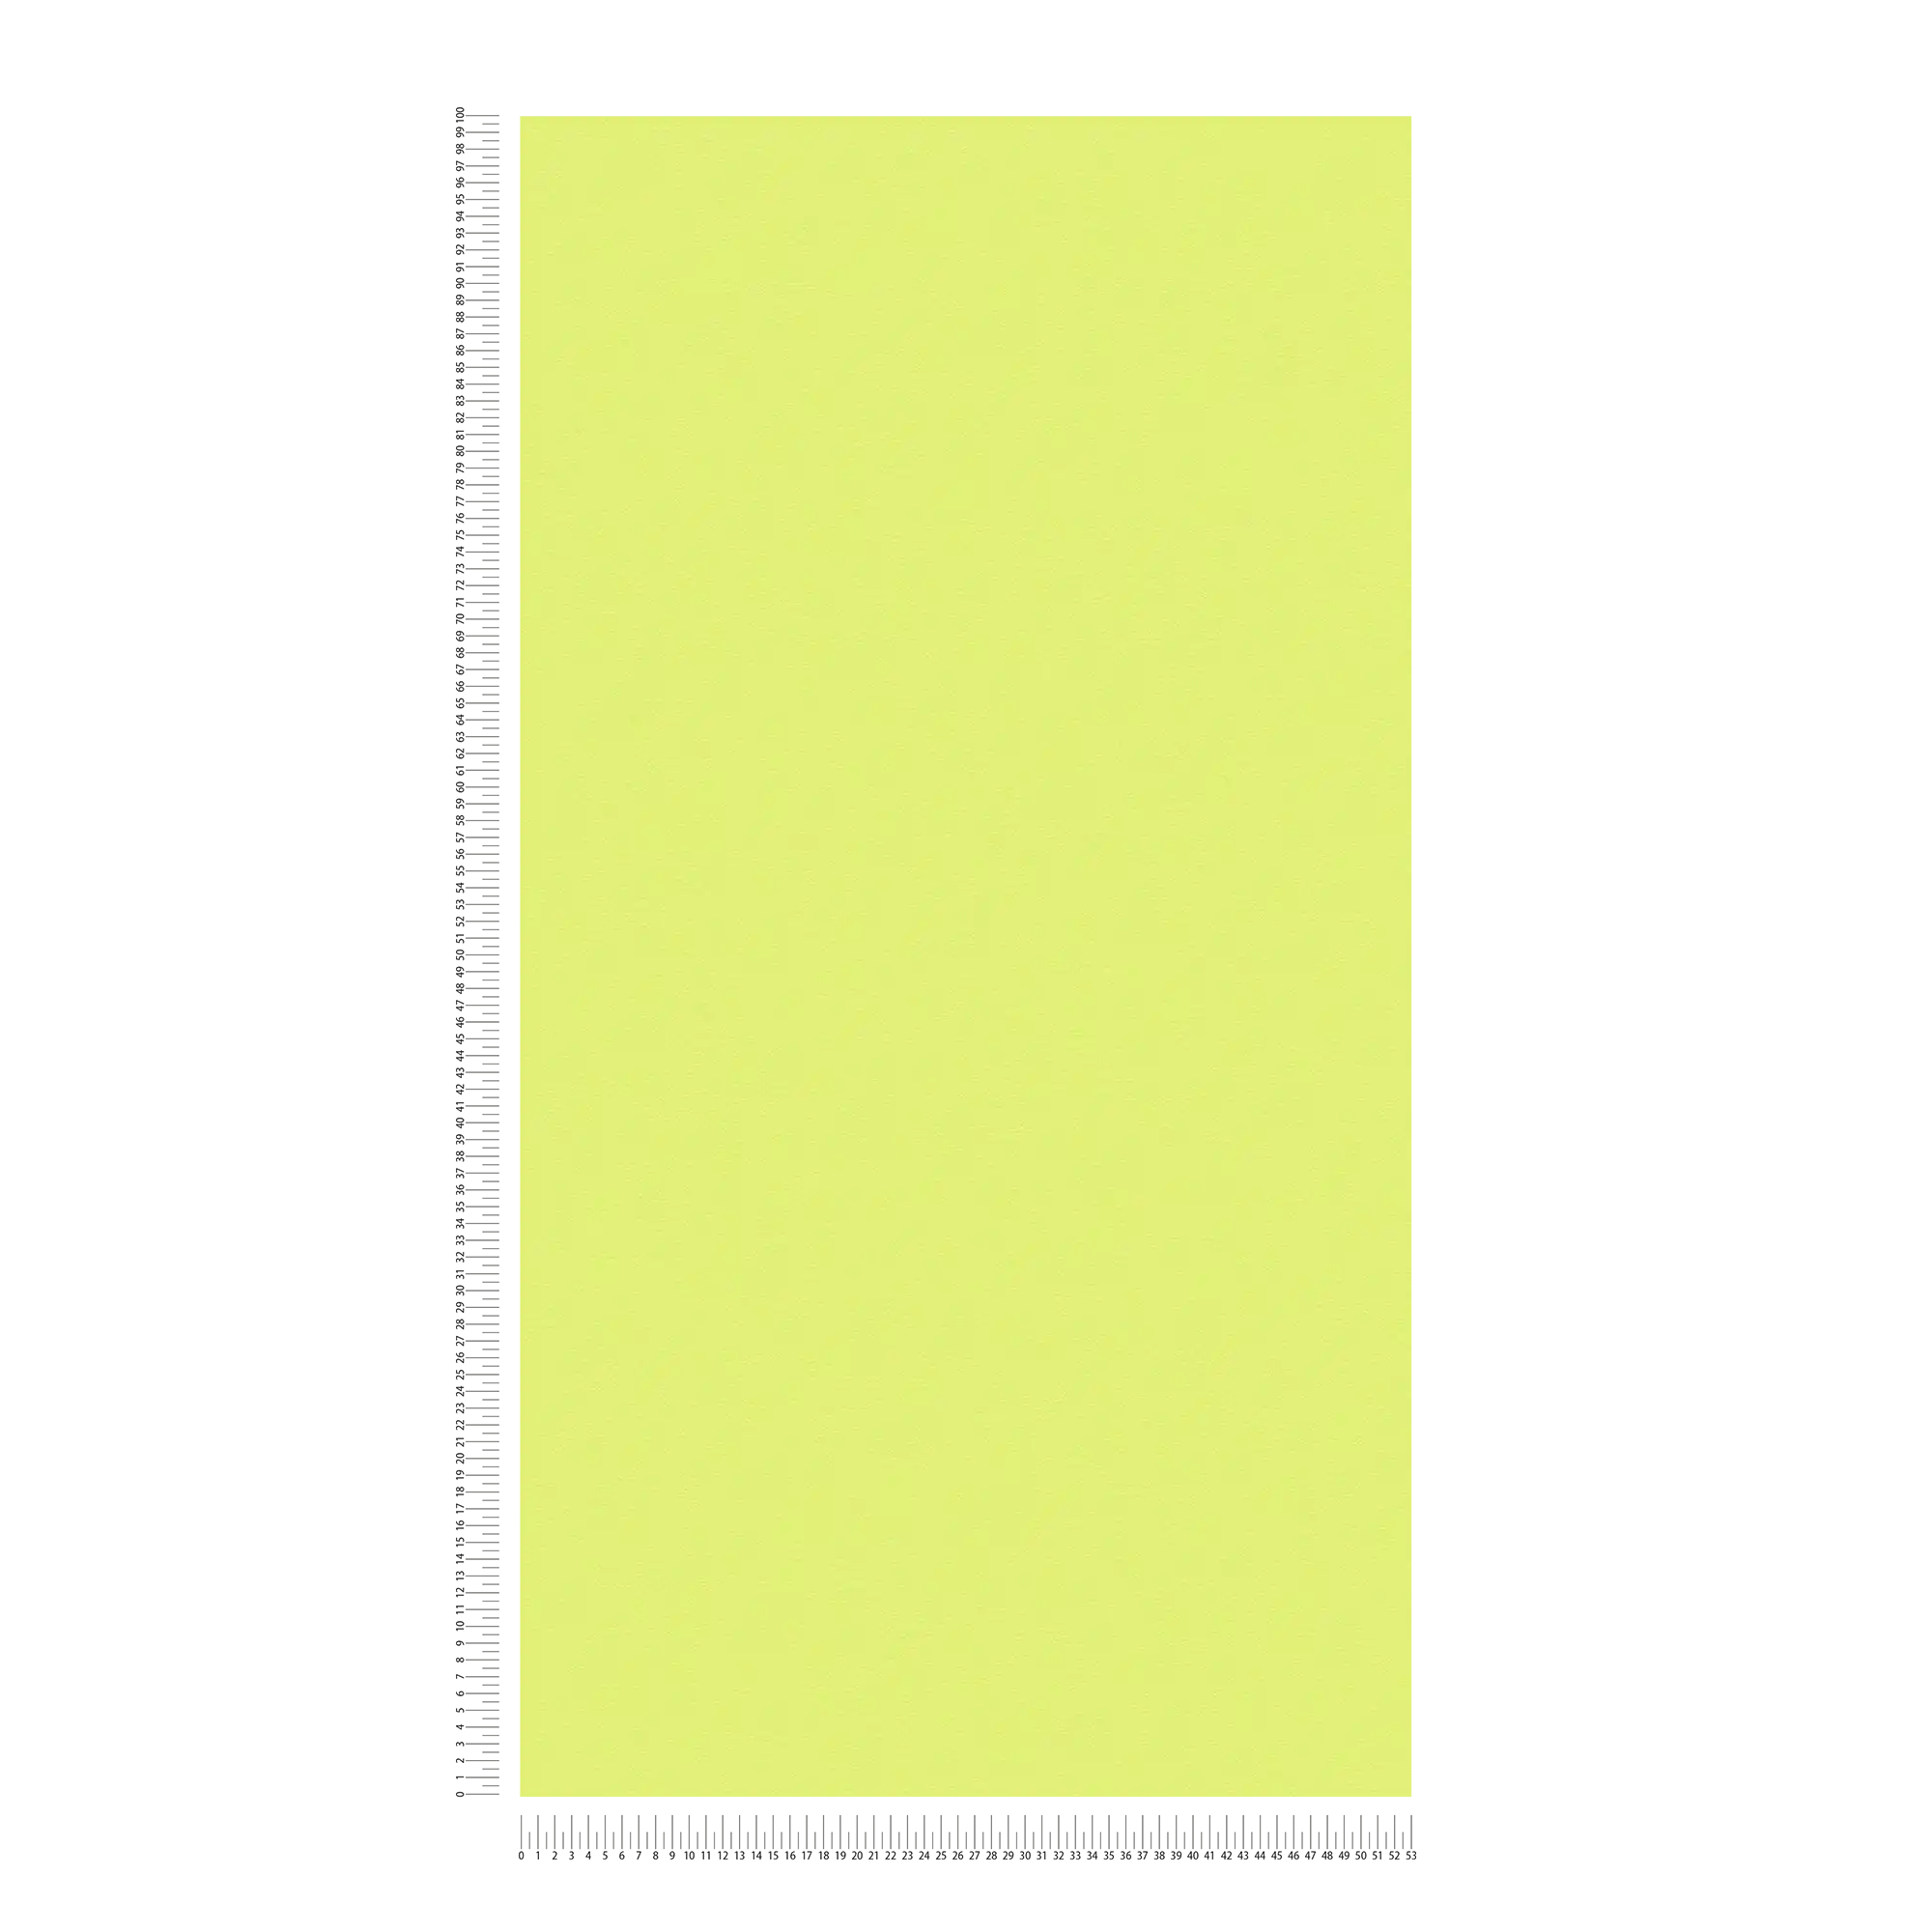             Eenheidsbehang lime groen met structuur effect, licht groen
        